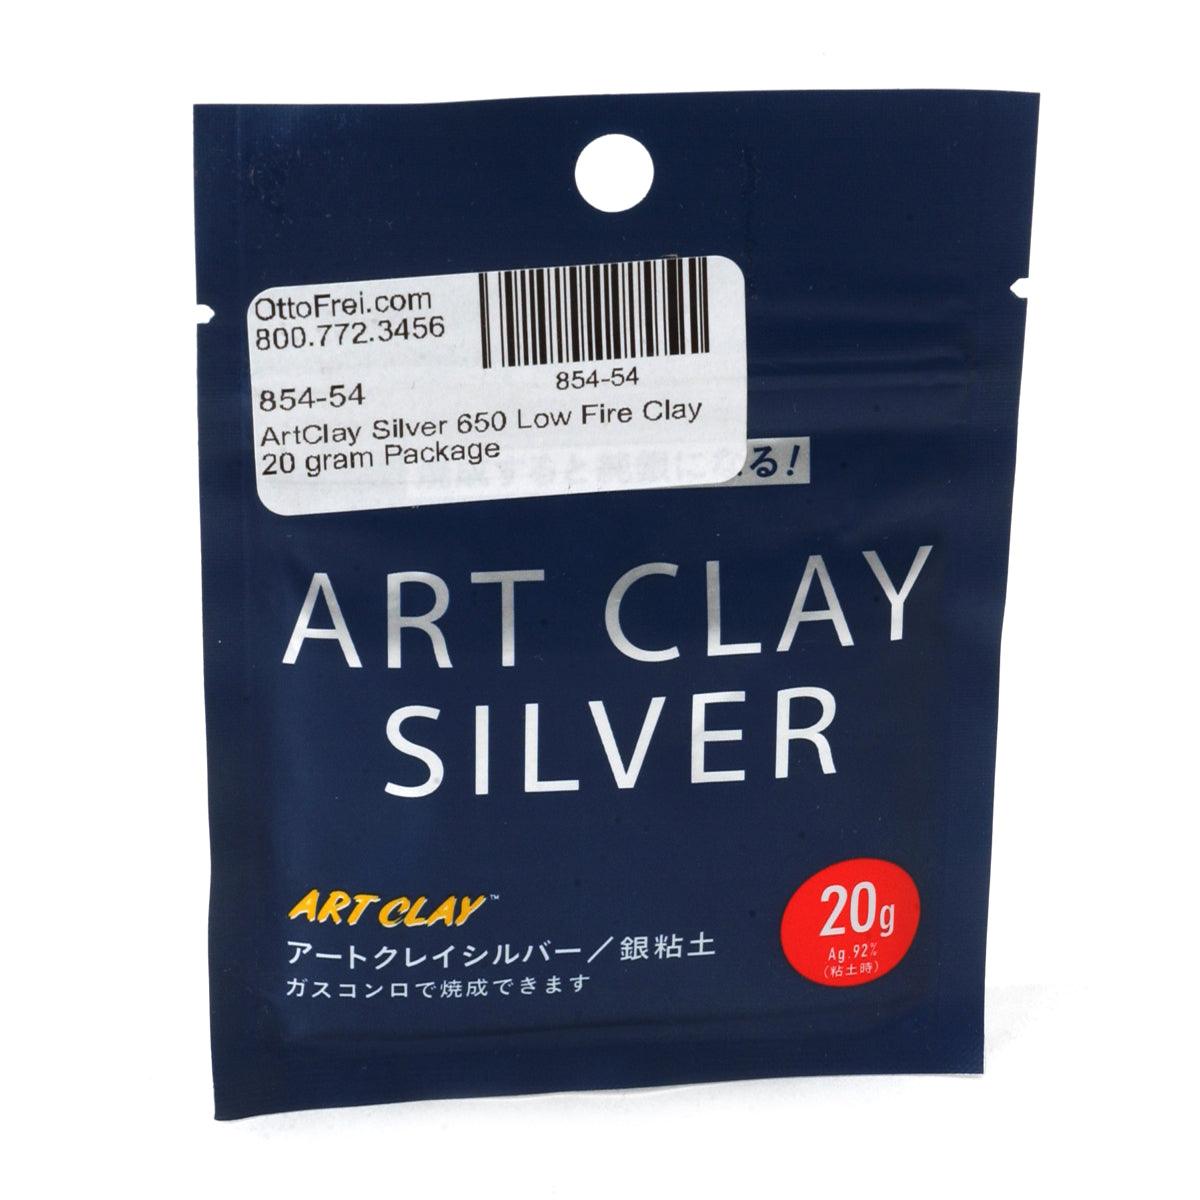 ARTCLAY Silver Art Clay Silver Starter Set